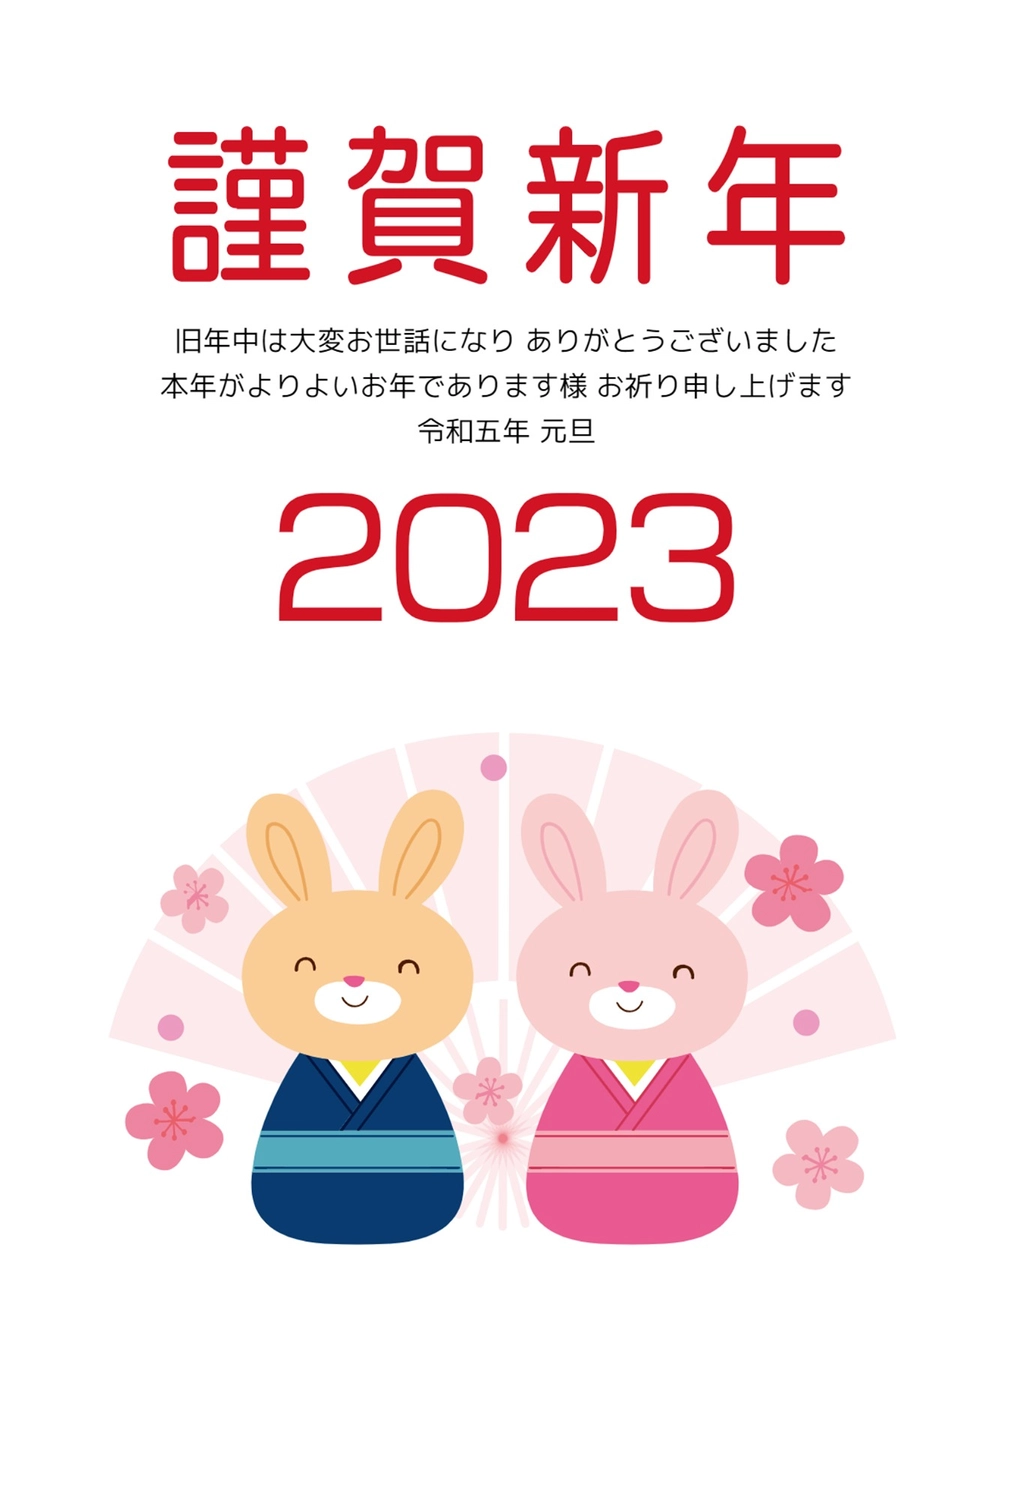 うさぎのカップル年賀状, New Year, concord, rabbit, New Year Card template